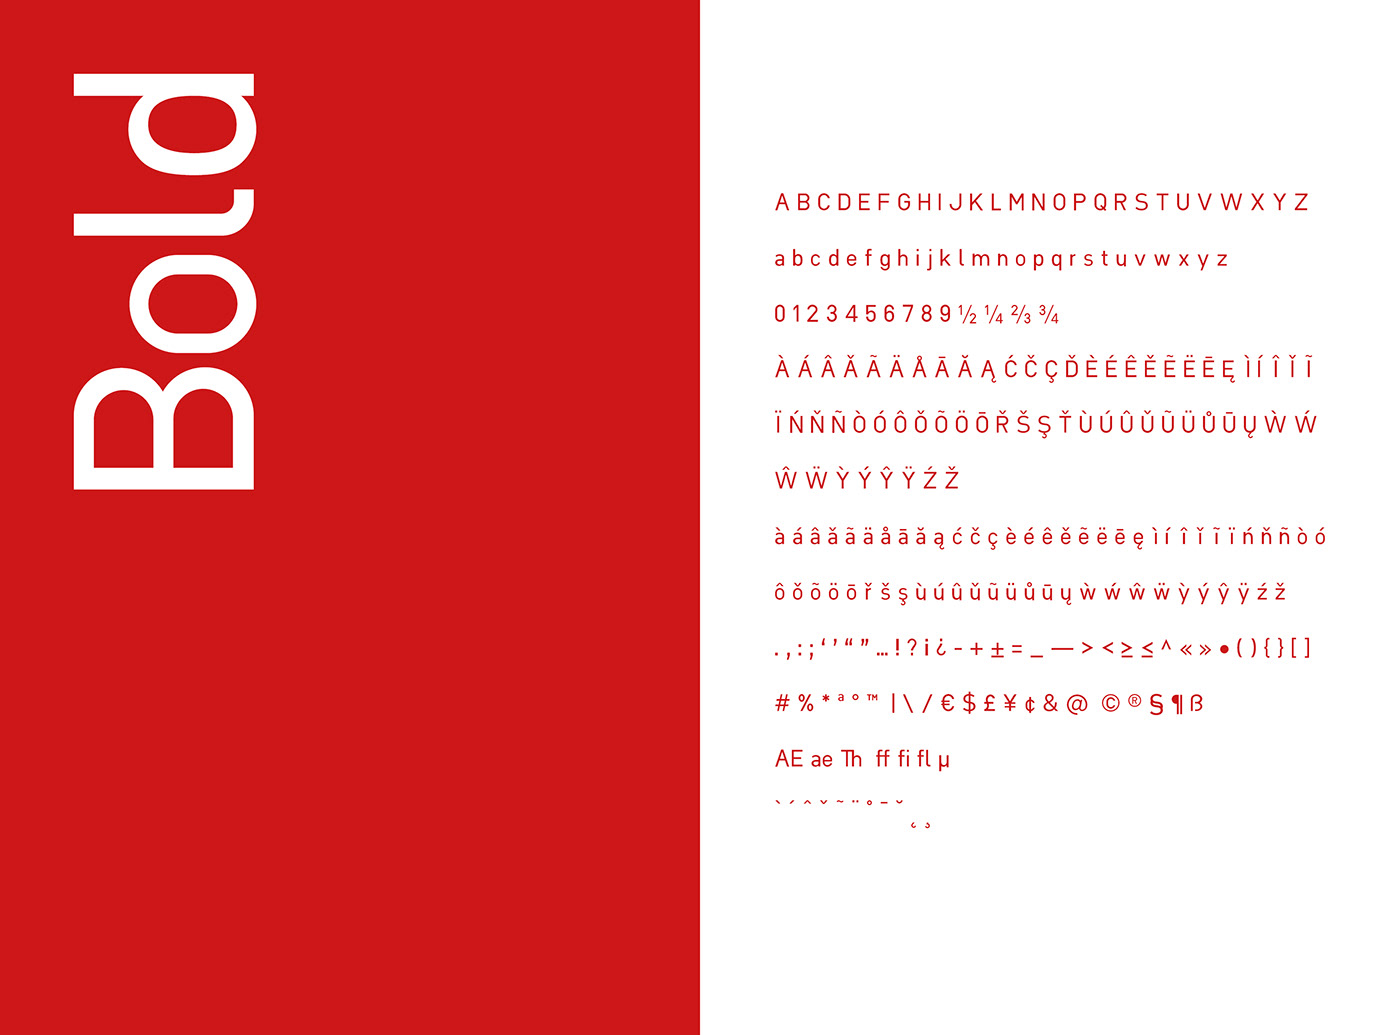 tesi tipografia font type type design editoria editorial design print